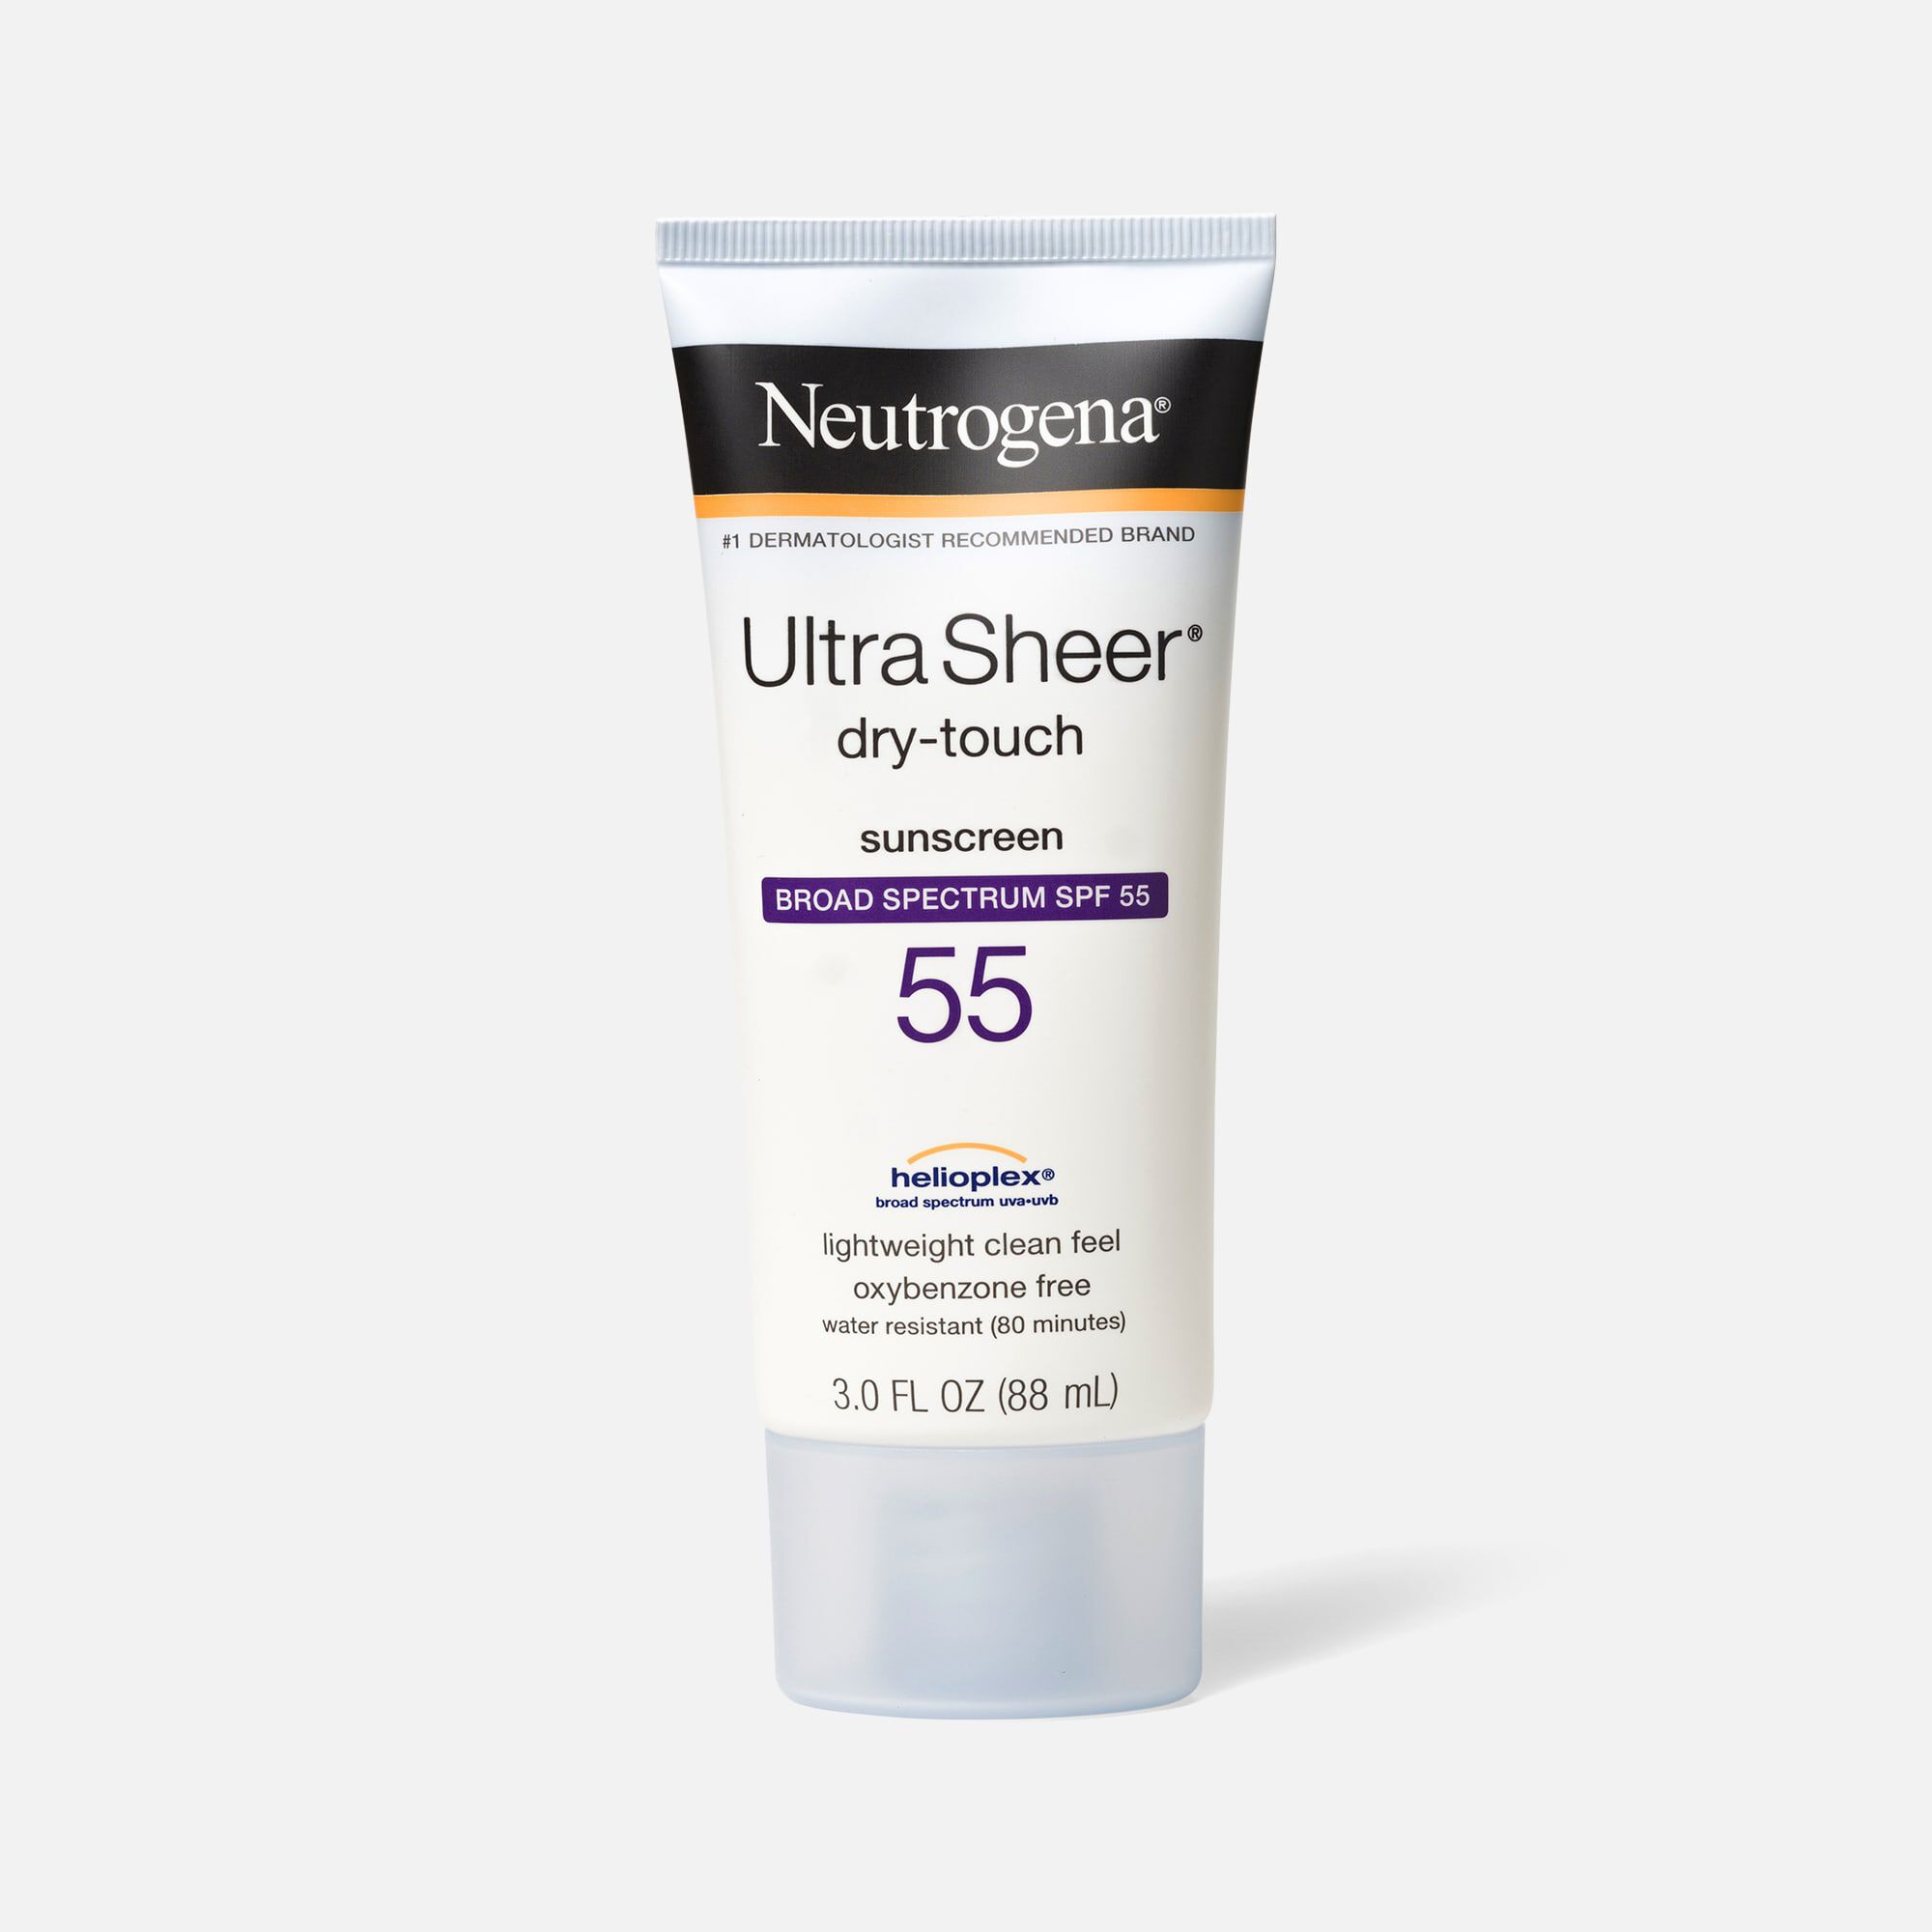 neutrogena sunscreen spray bad